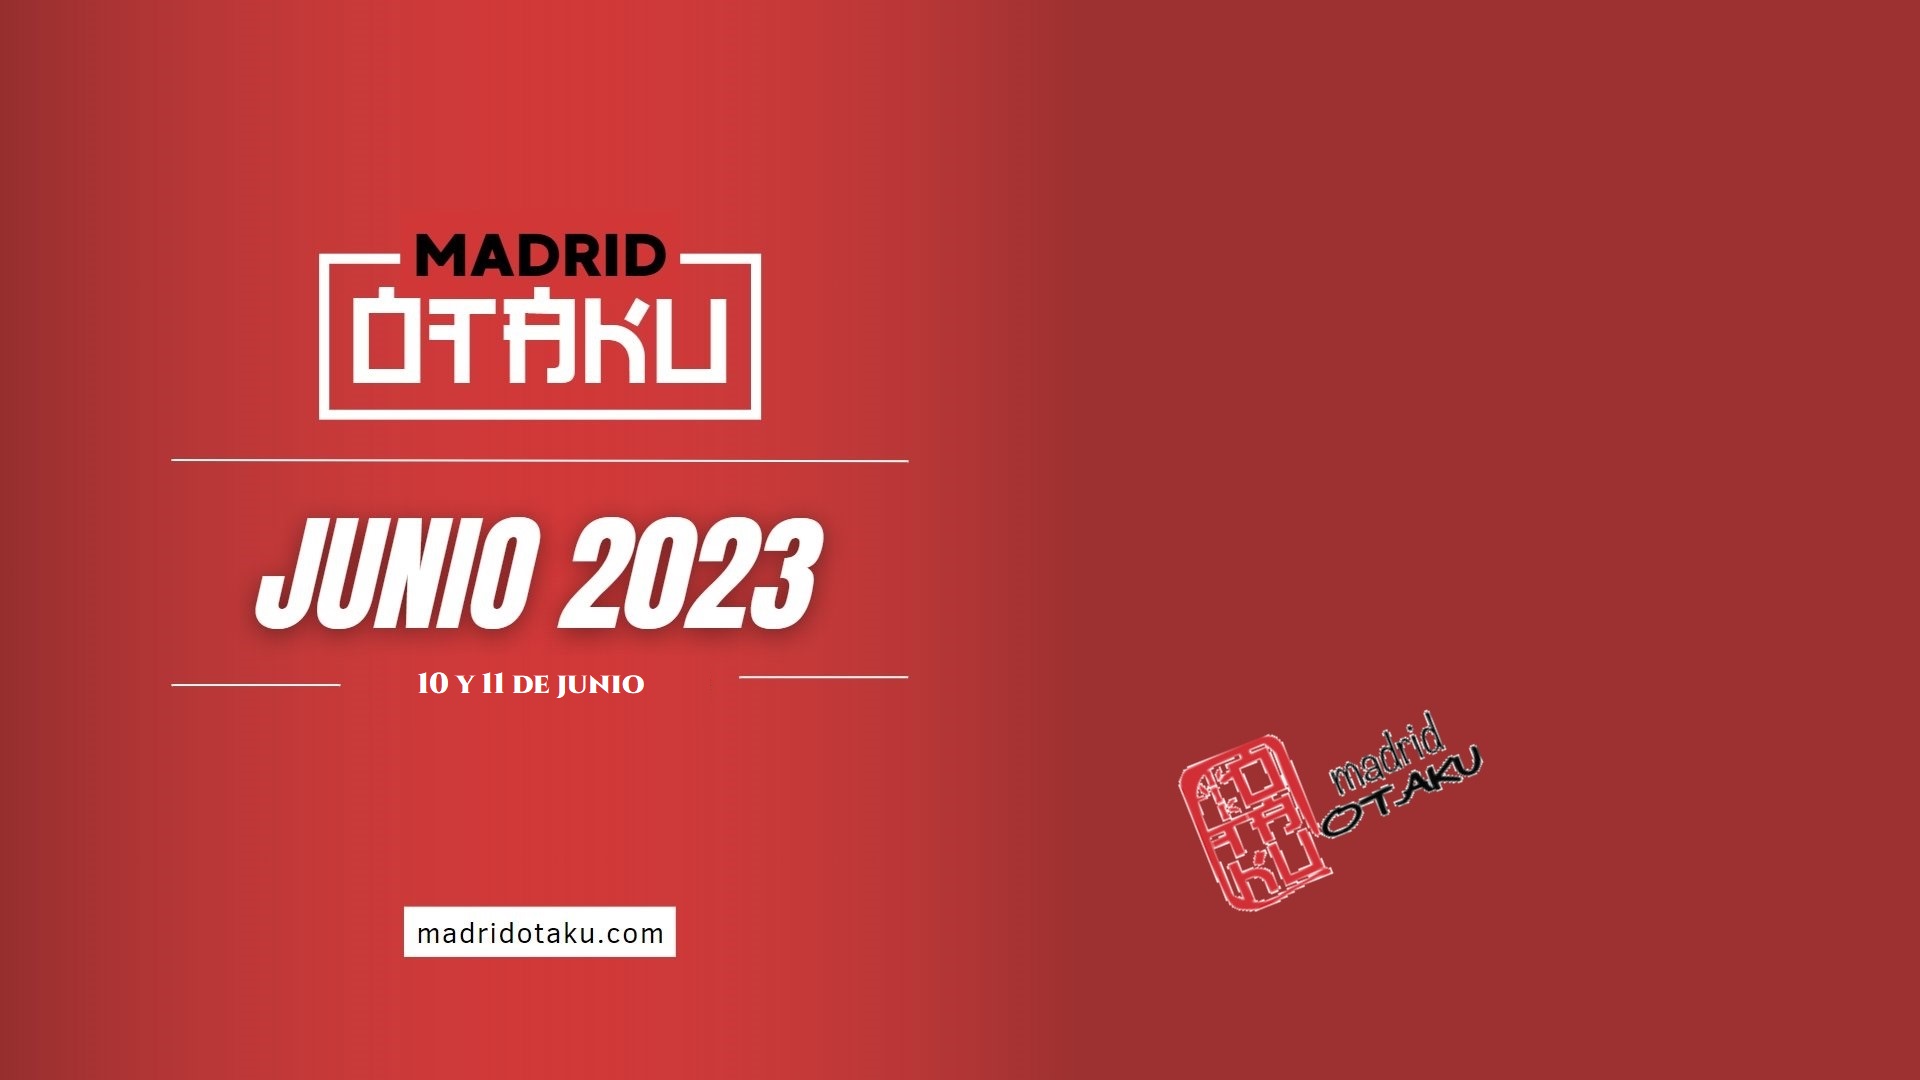 Madrid Otaku 2023: